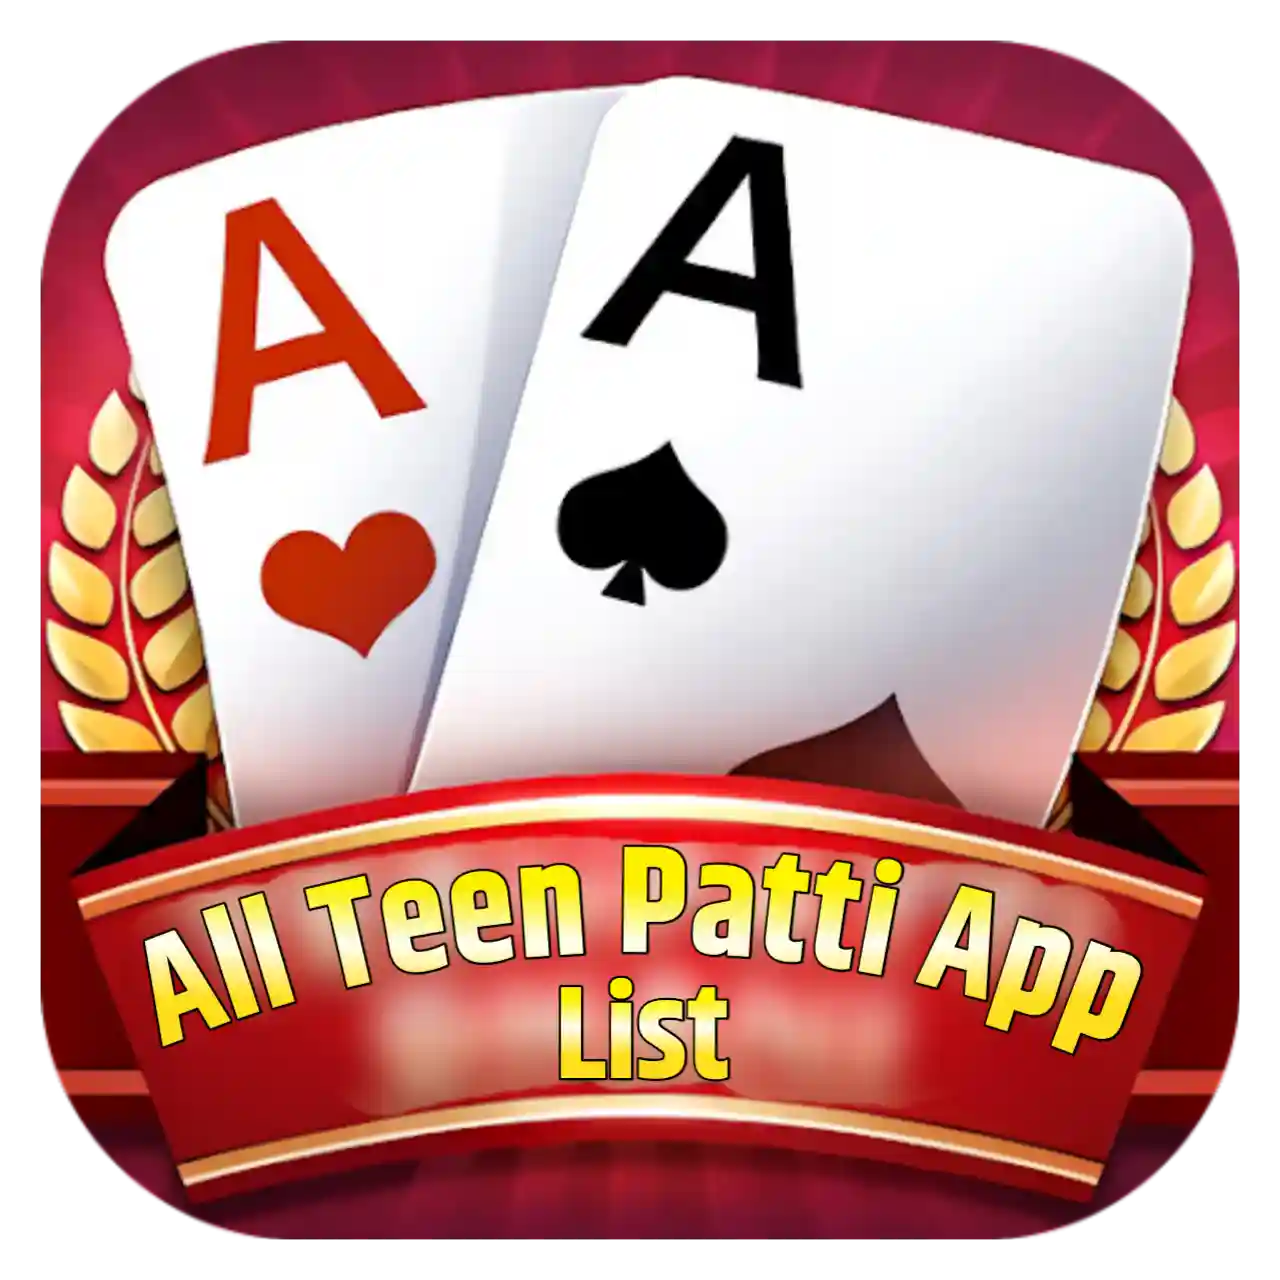 All Teen Patti Apk List - All Teen Patti App List ₹41 Bonus